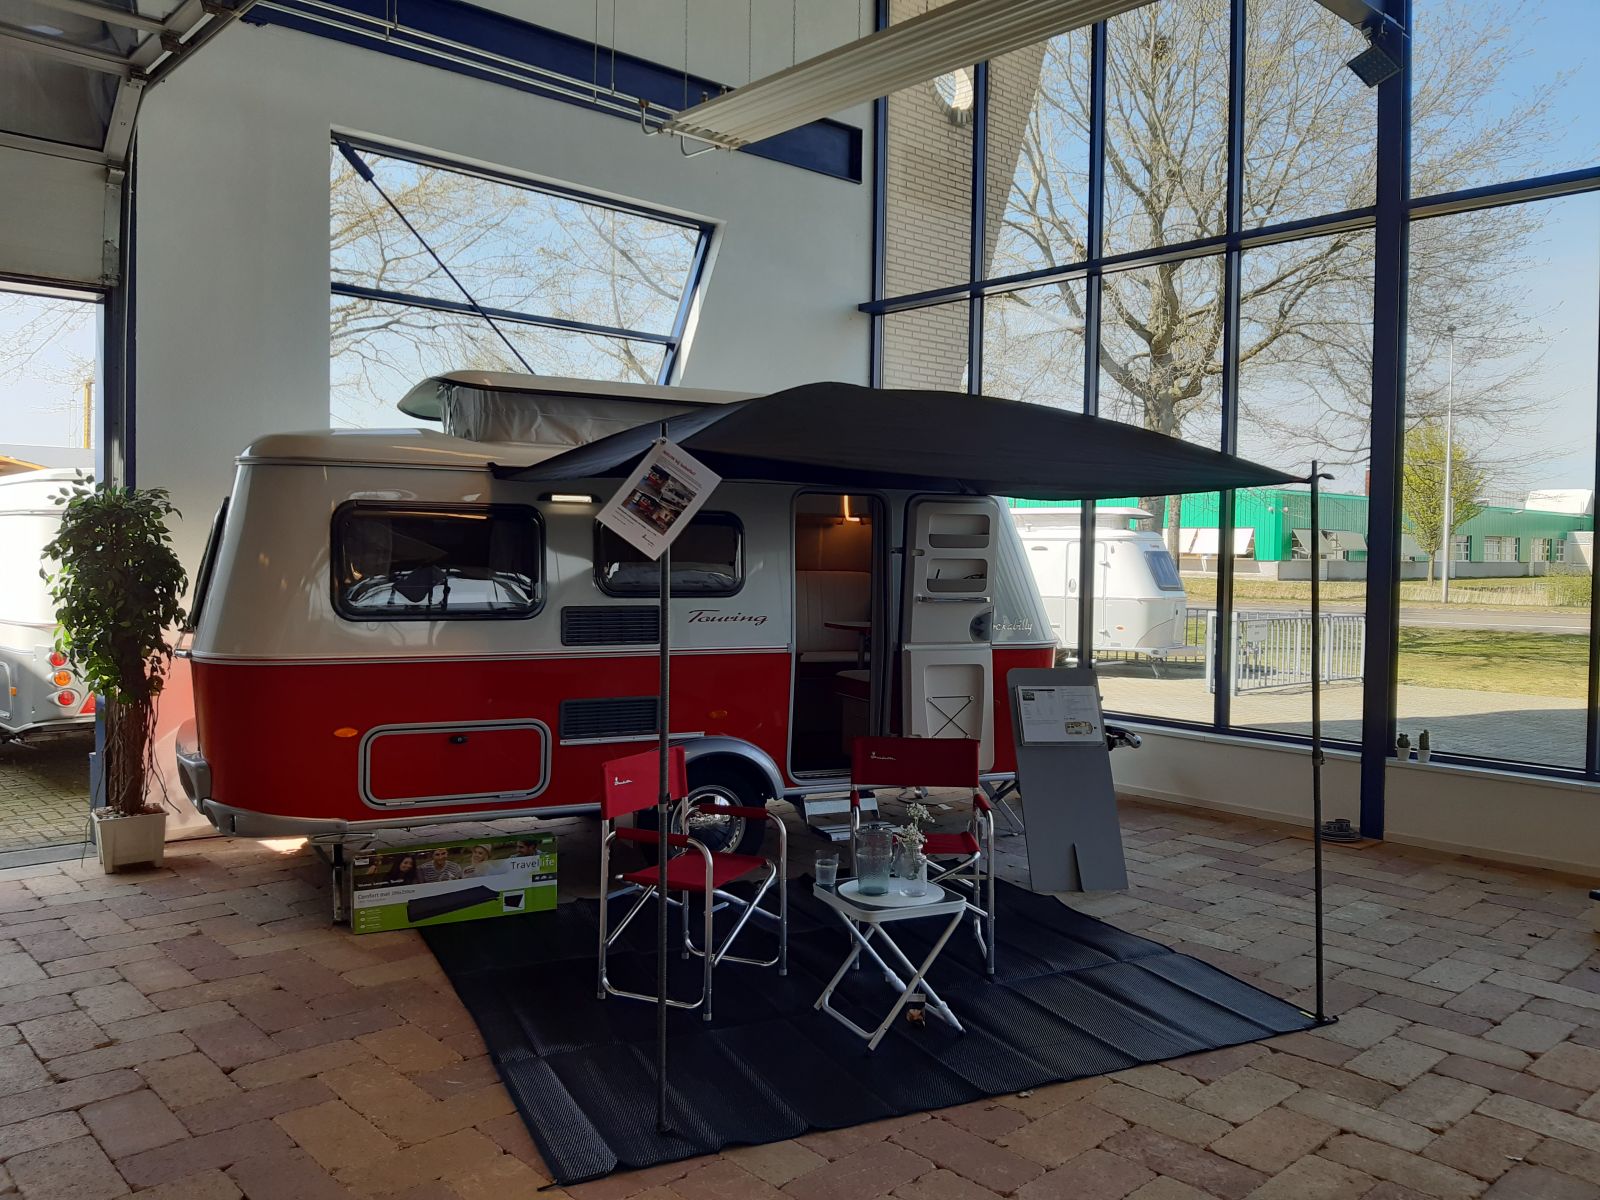 Steken Christchurch avontuur Isabella ASA-luifel, ook aan je hefdak-caravan - camping-experience.nl